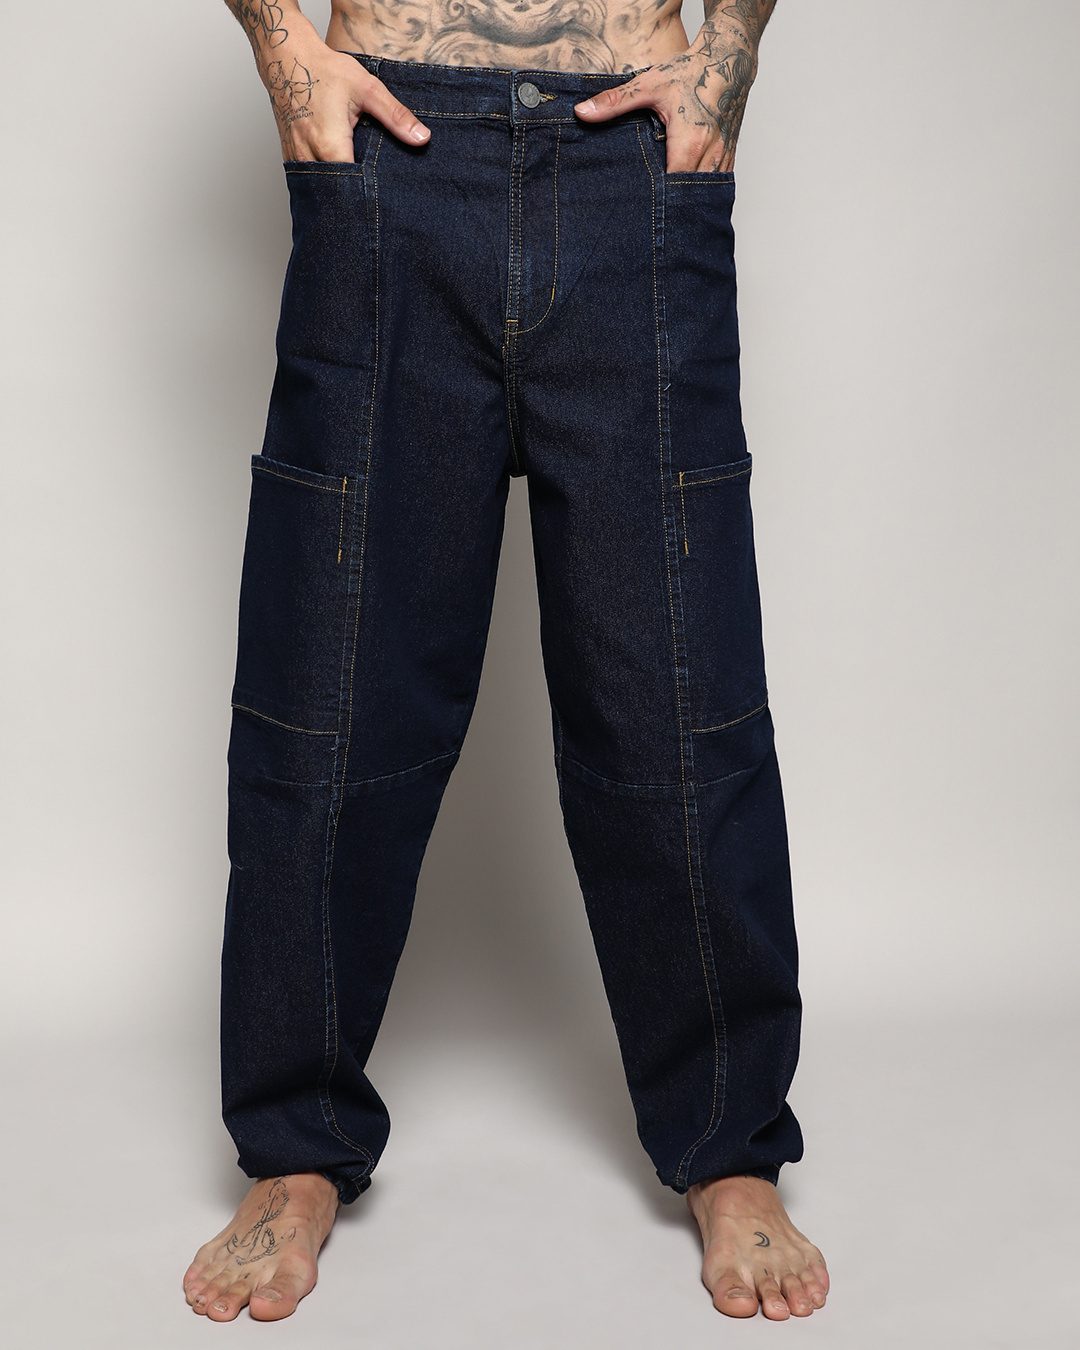 Buy Men's Blue Baggy Oversized Cargo Jeans Online at Bewakoof